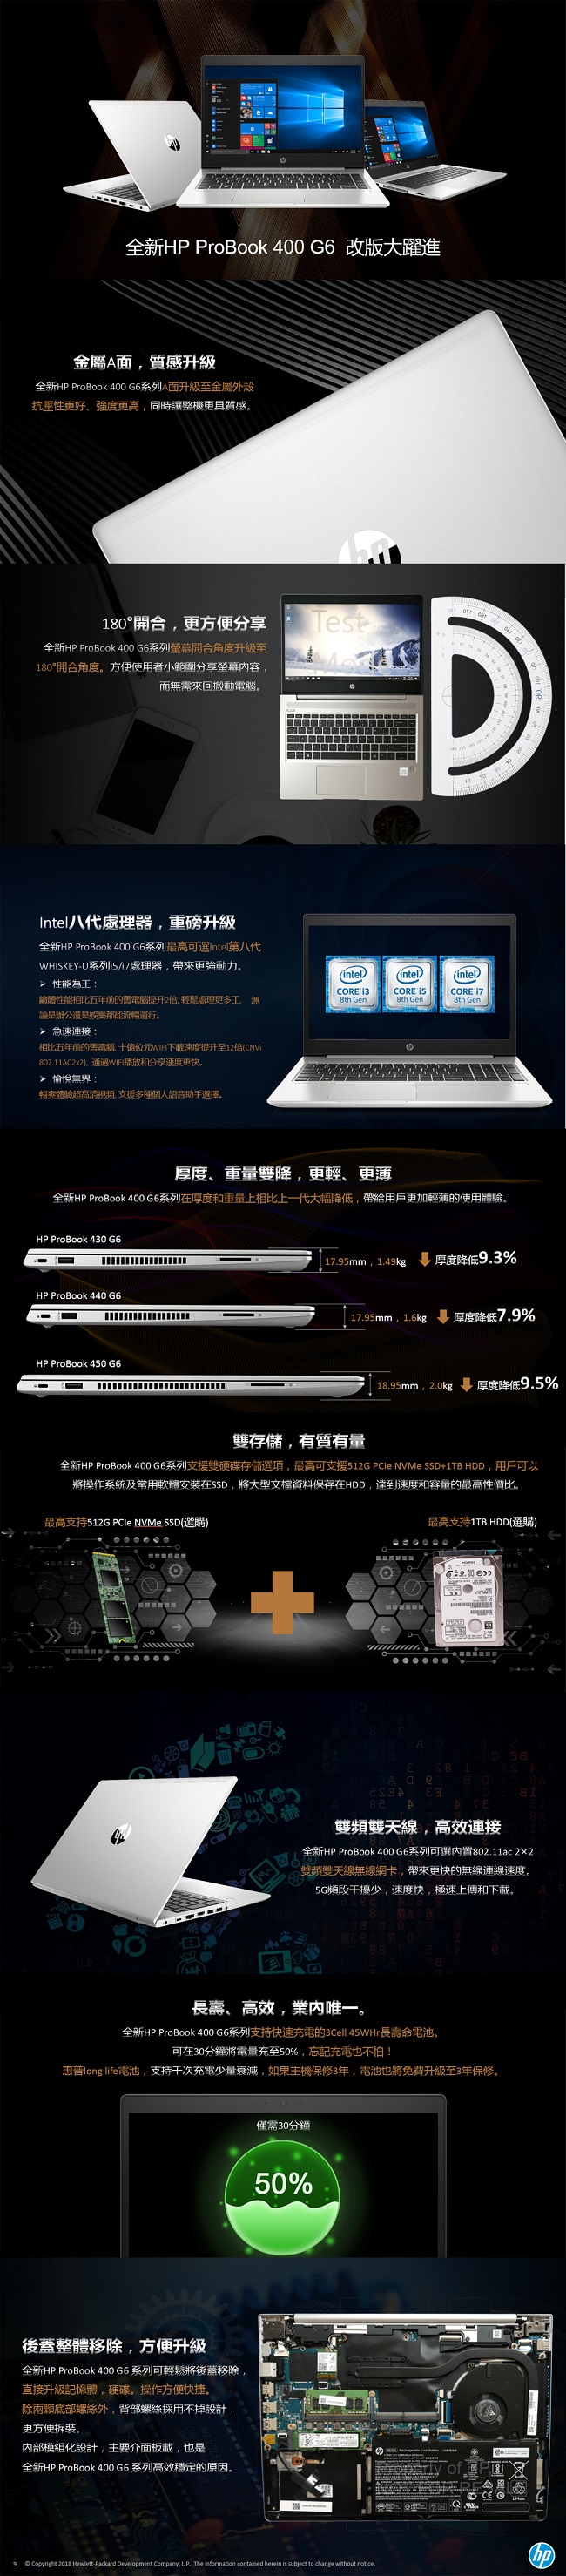 HP ProBook 430G6 Intel® i5 13.3吋商用筆電(SSD版)